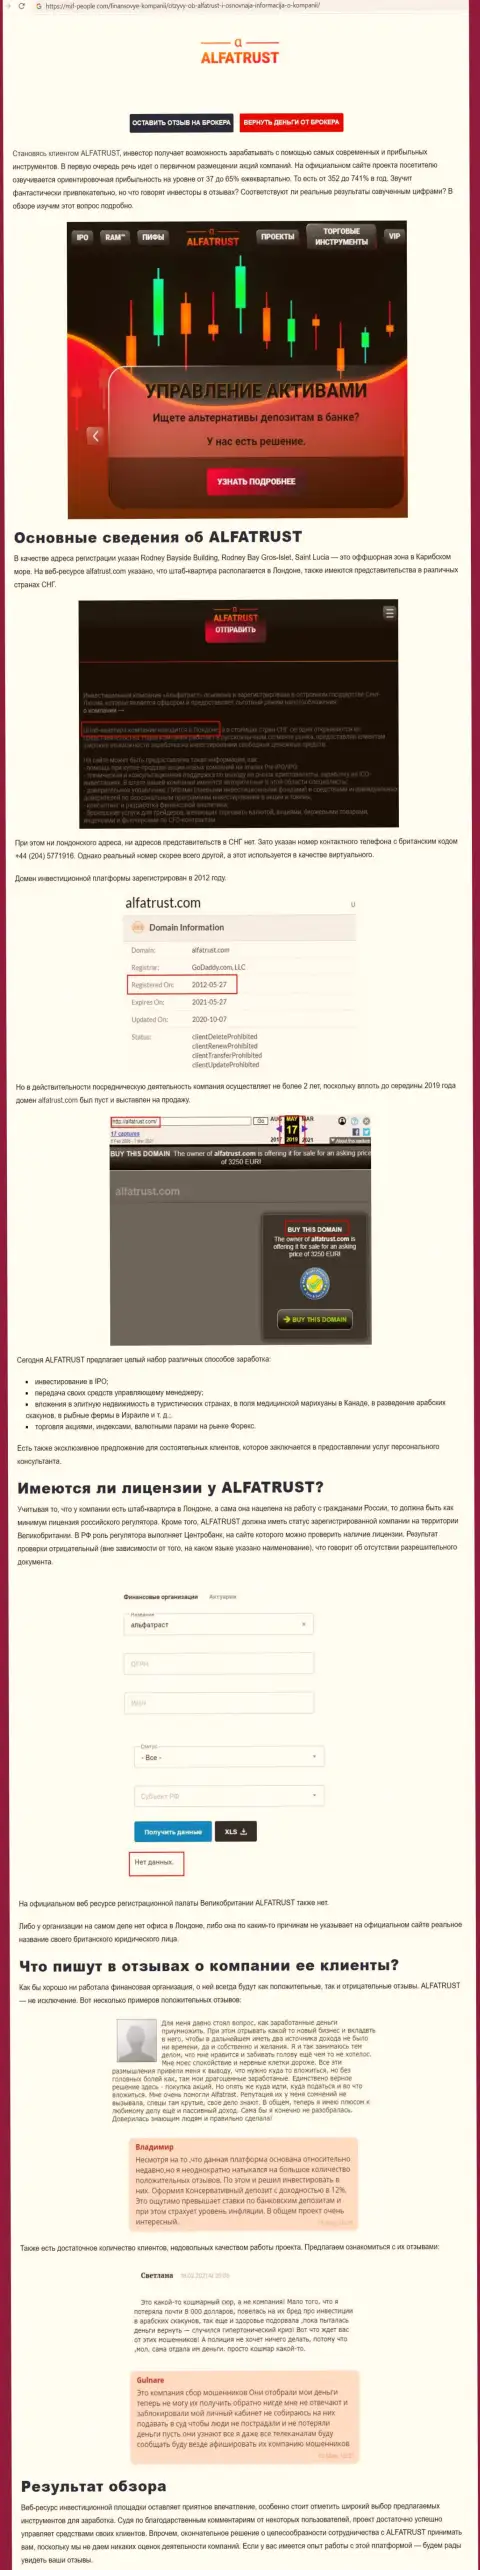 Сайт mif people com представил информацию о ФОРЕКС брокере ALFATRUST LTD